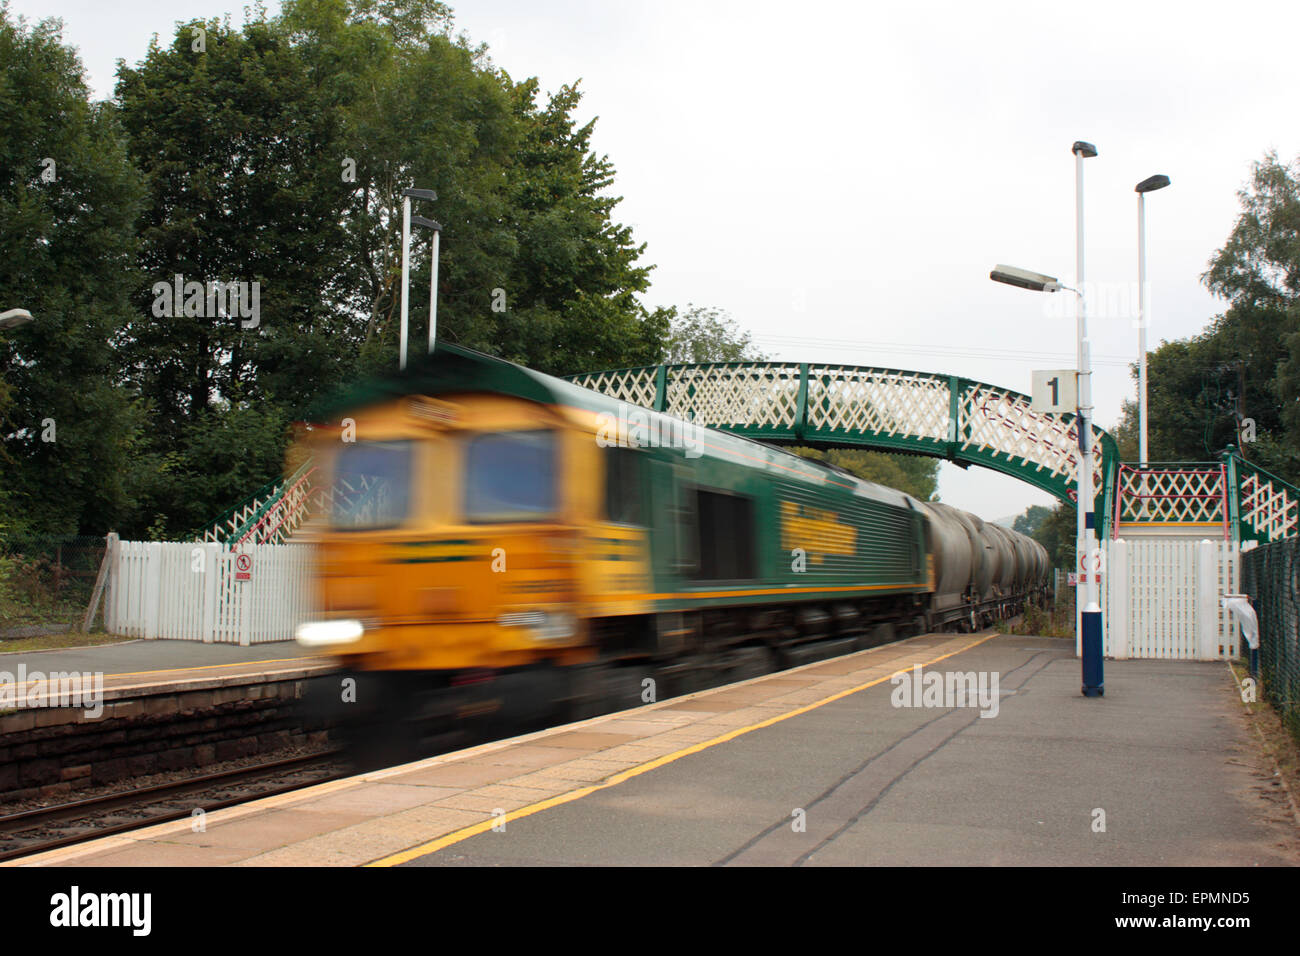 Güterzug Schnell einsatzbereit durch Hoffnung Station, Derbyshire, UK. Verschlusszeit für blur Effekt verwendet. Rail Transport Logistik und Supply Chain. Stockfoto